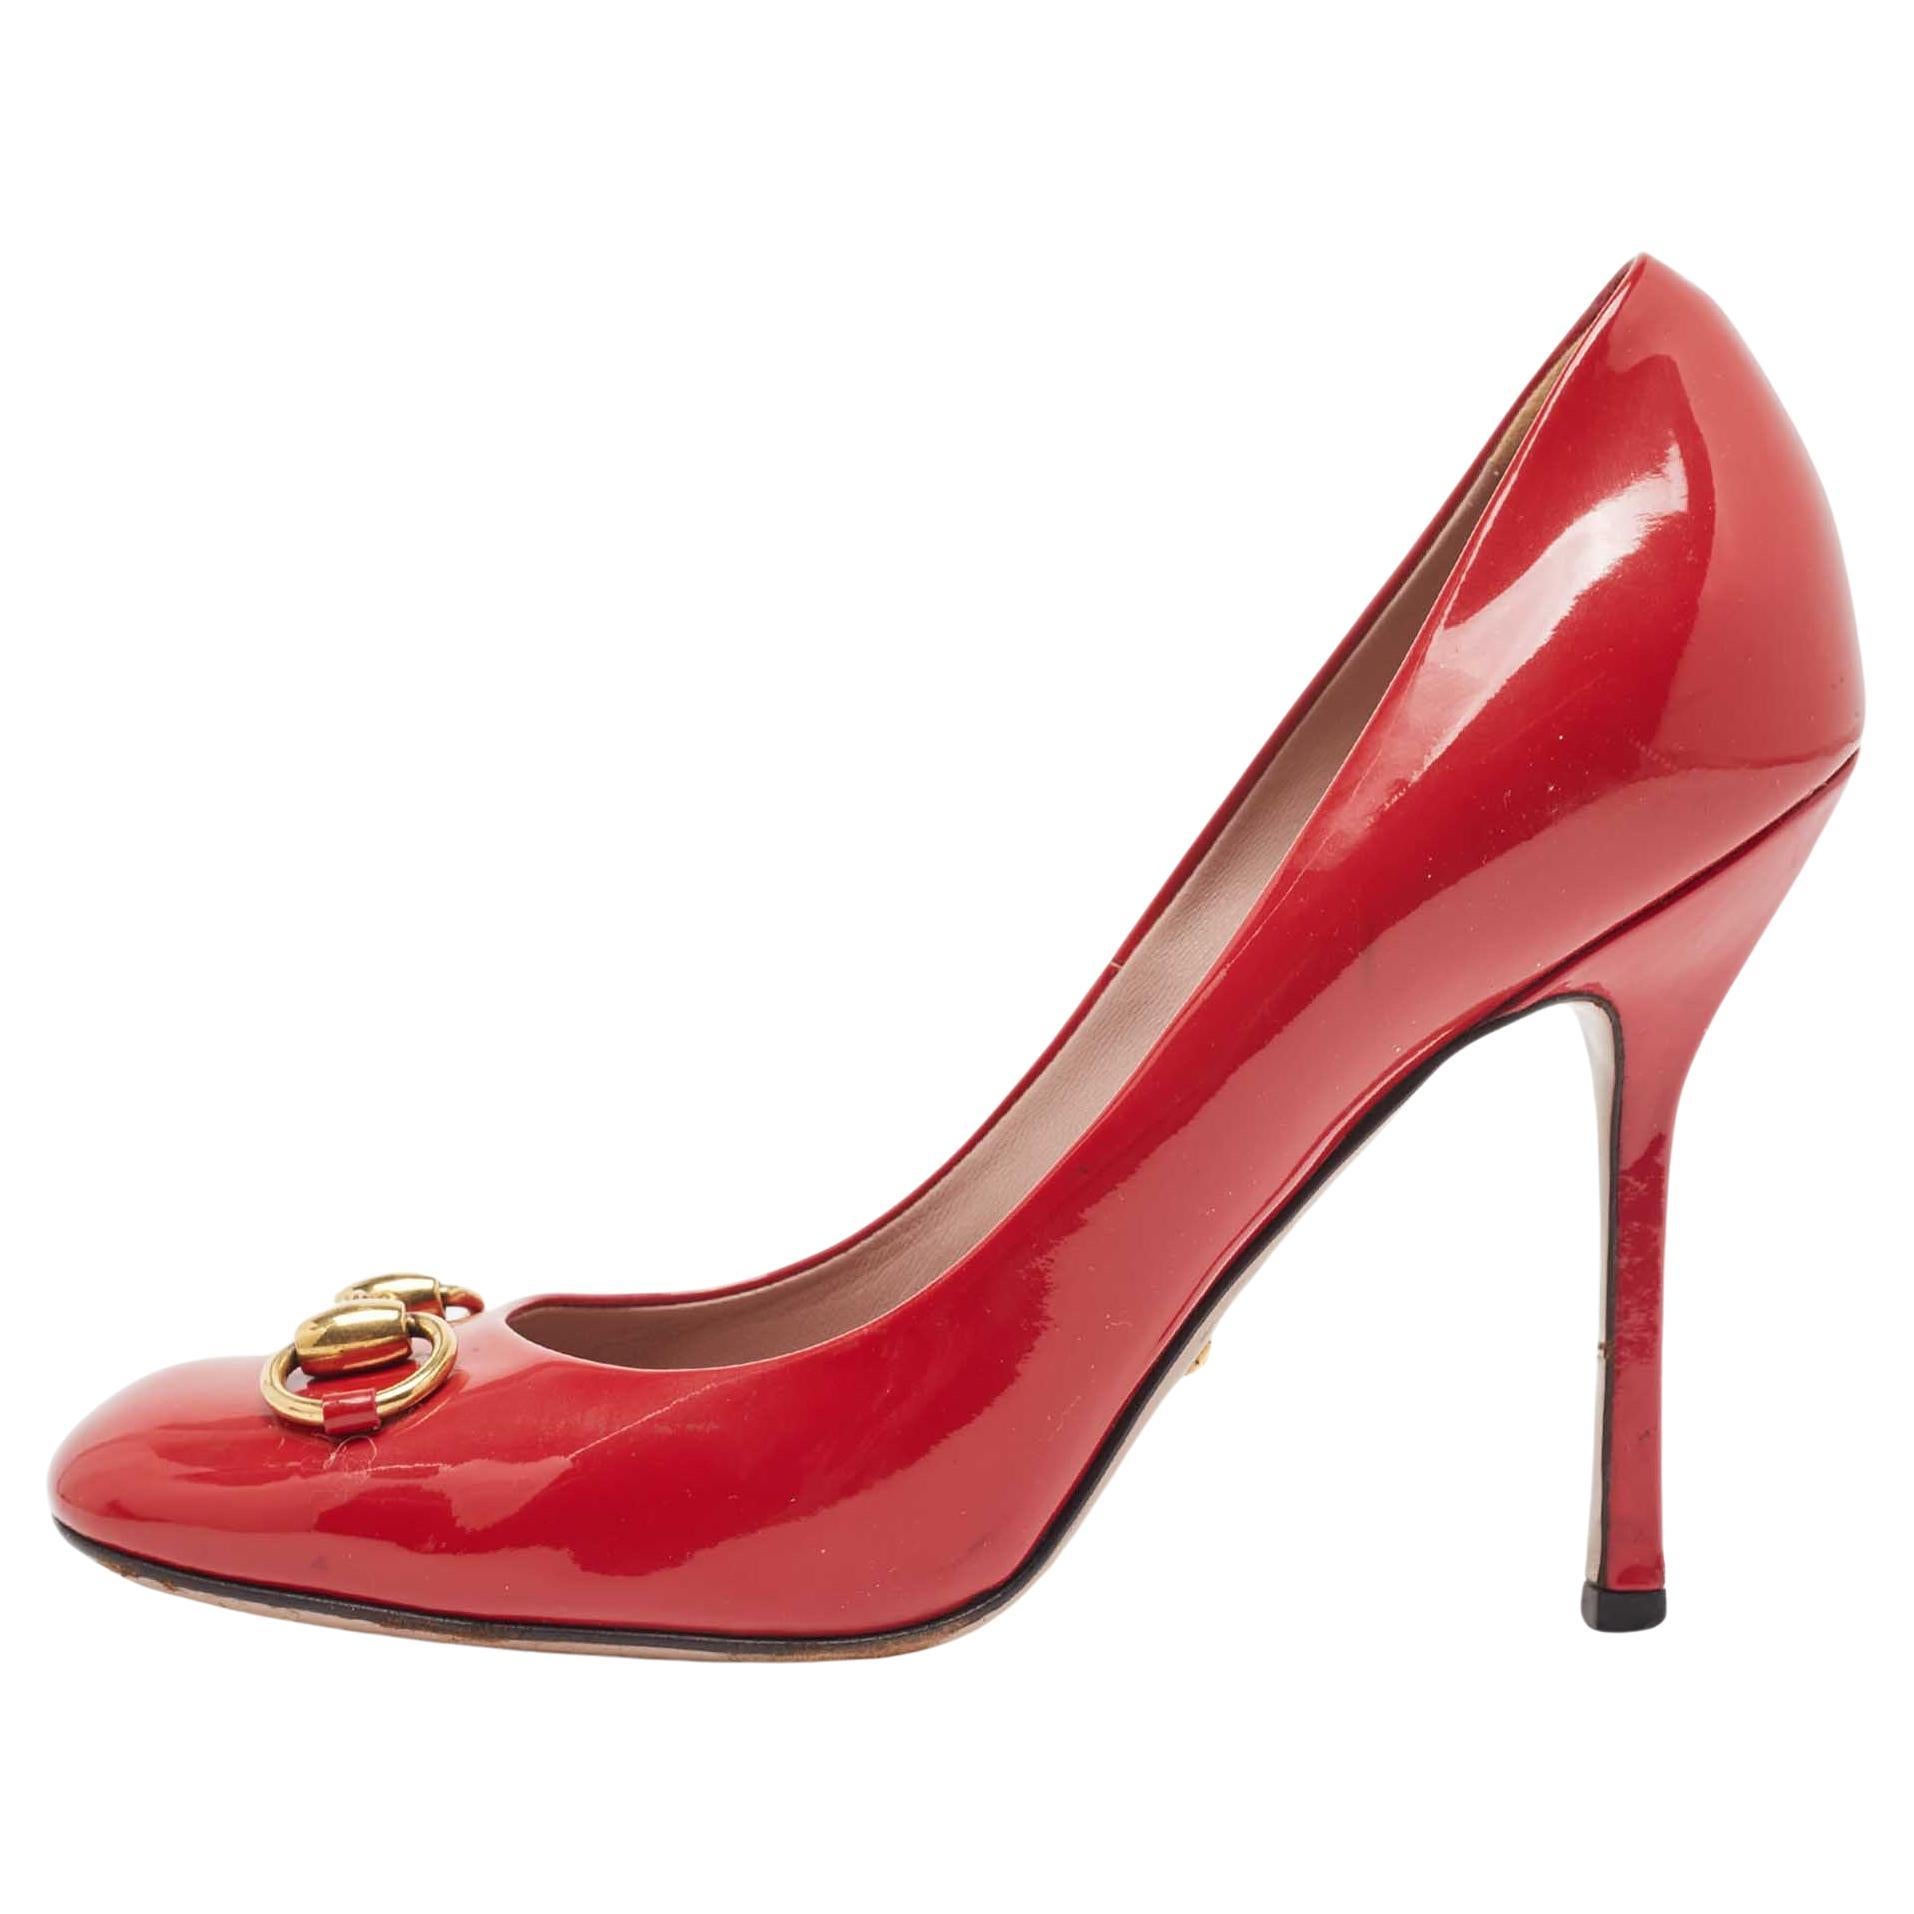 Gucci escarpins à bout carré en cuir verni rouge « Jolene Horsebit », taille 37,5 en vente